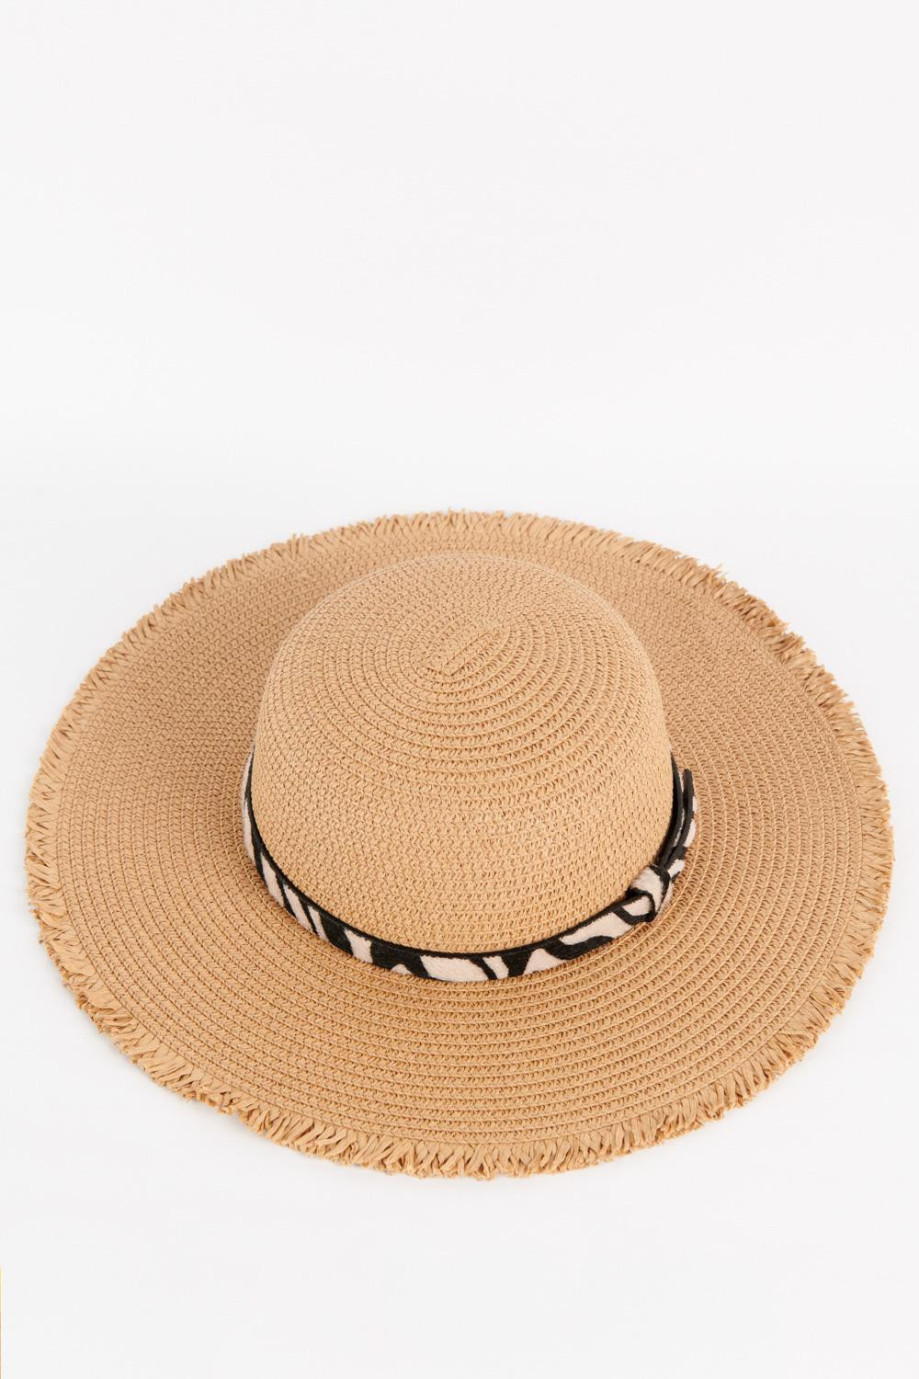 Sombrero de paja para mujer estilo ala ancha color café claro, con lazo decorativo en color contraste.